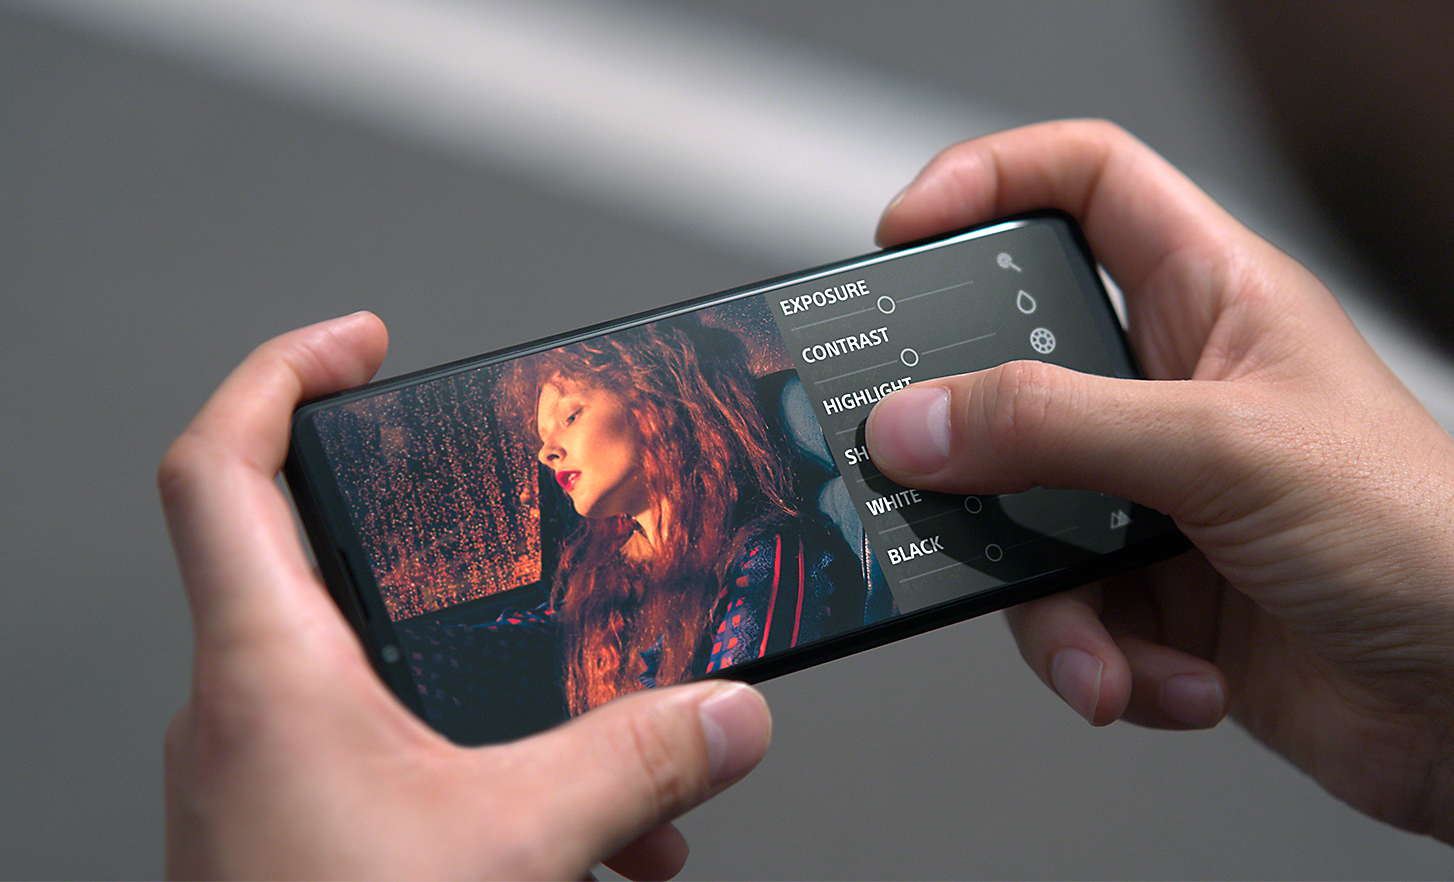 Ruce poklepávající na uživatelské rozhraní obrazovky smartphonu Xperia PRO-I, na němž je vidět obrázek ženy